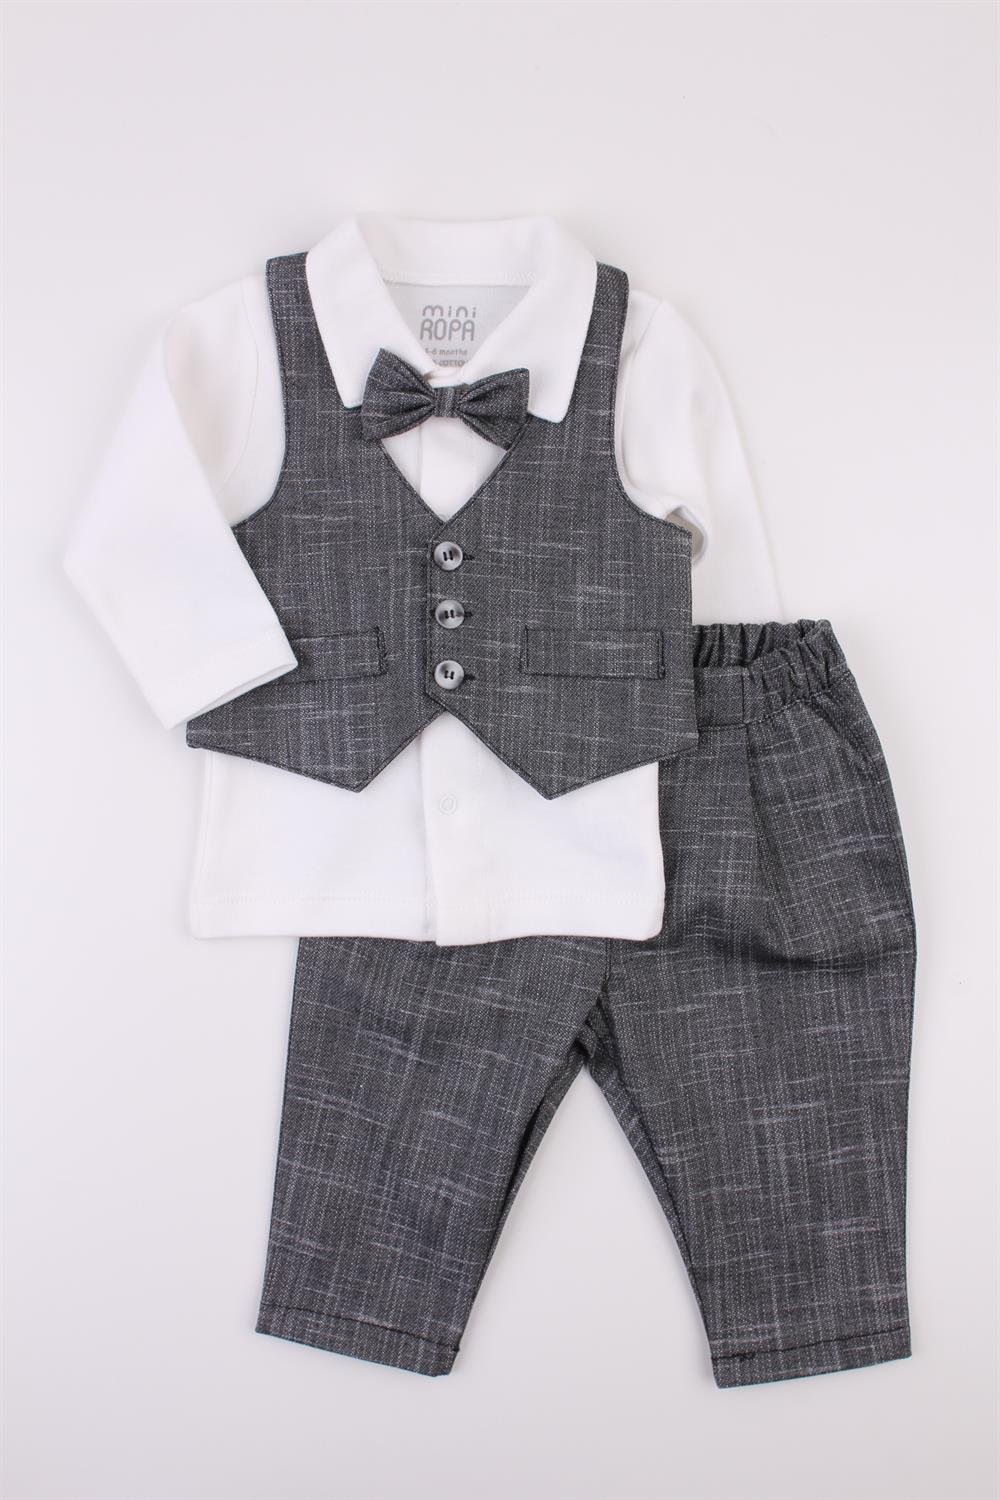 Antrasit Yelekli Erkek Bebek Takım Bebek Takım Elbise Özel Gün Kıyafeti